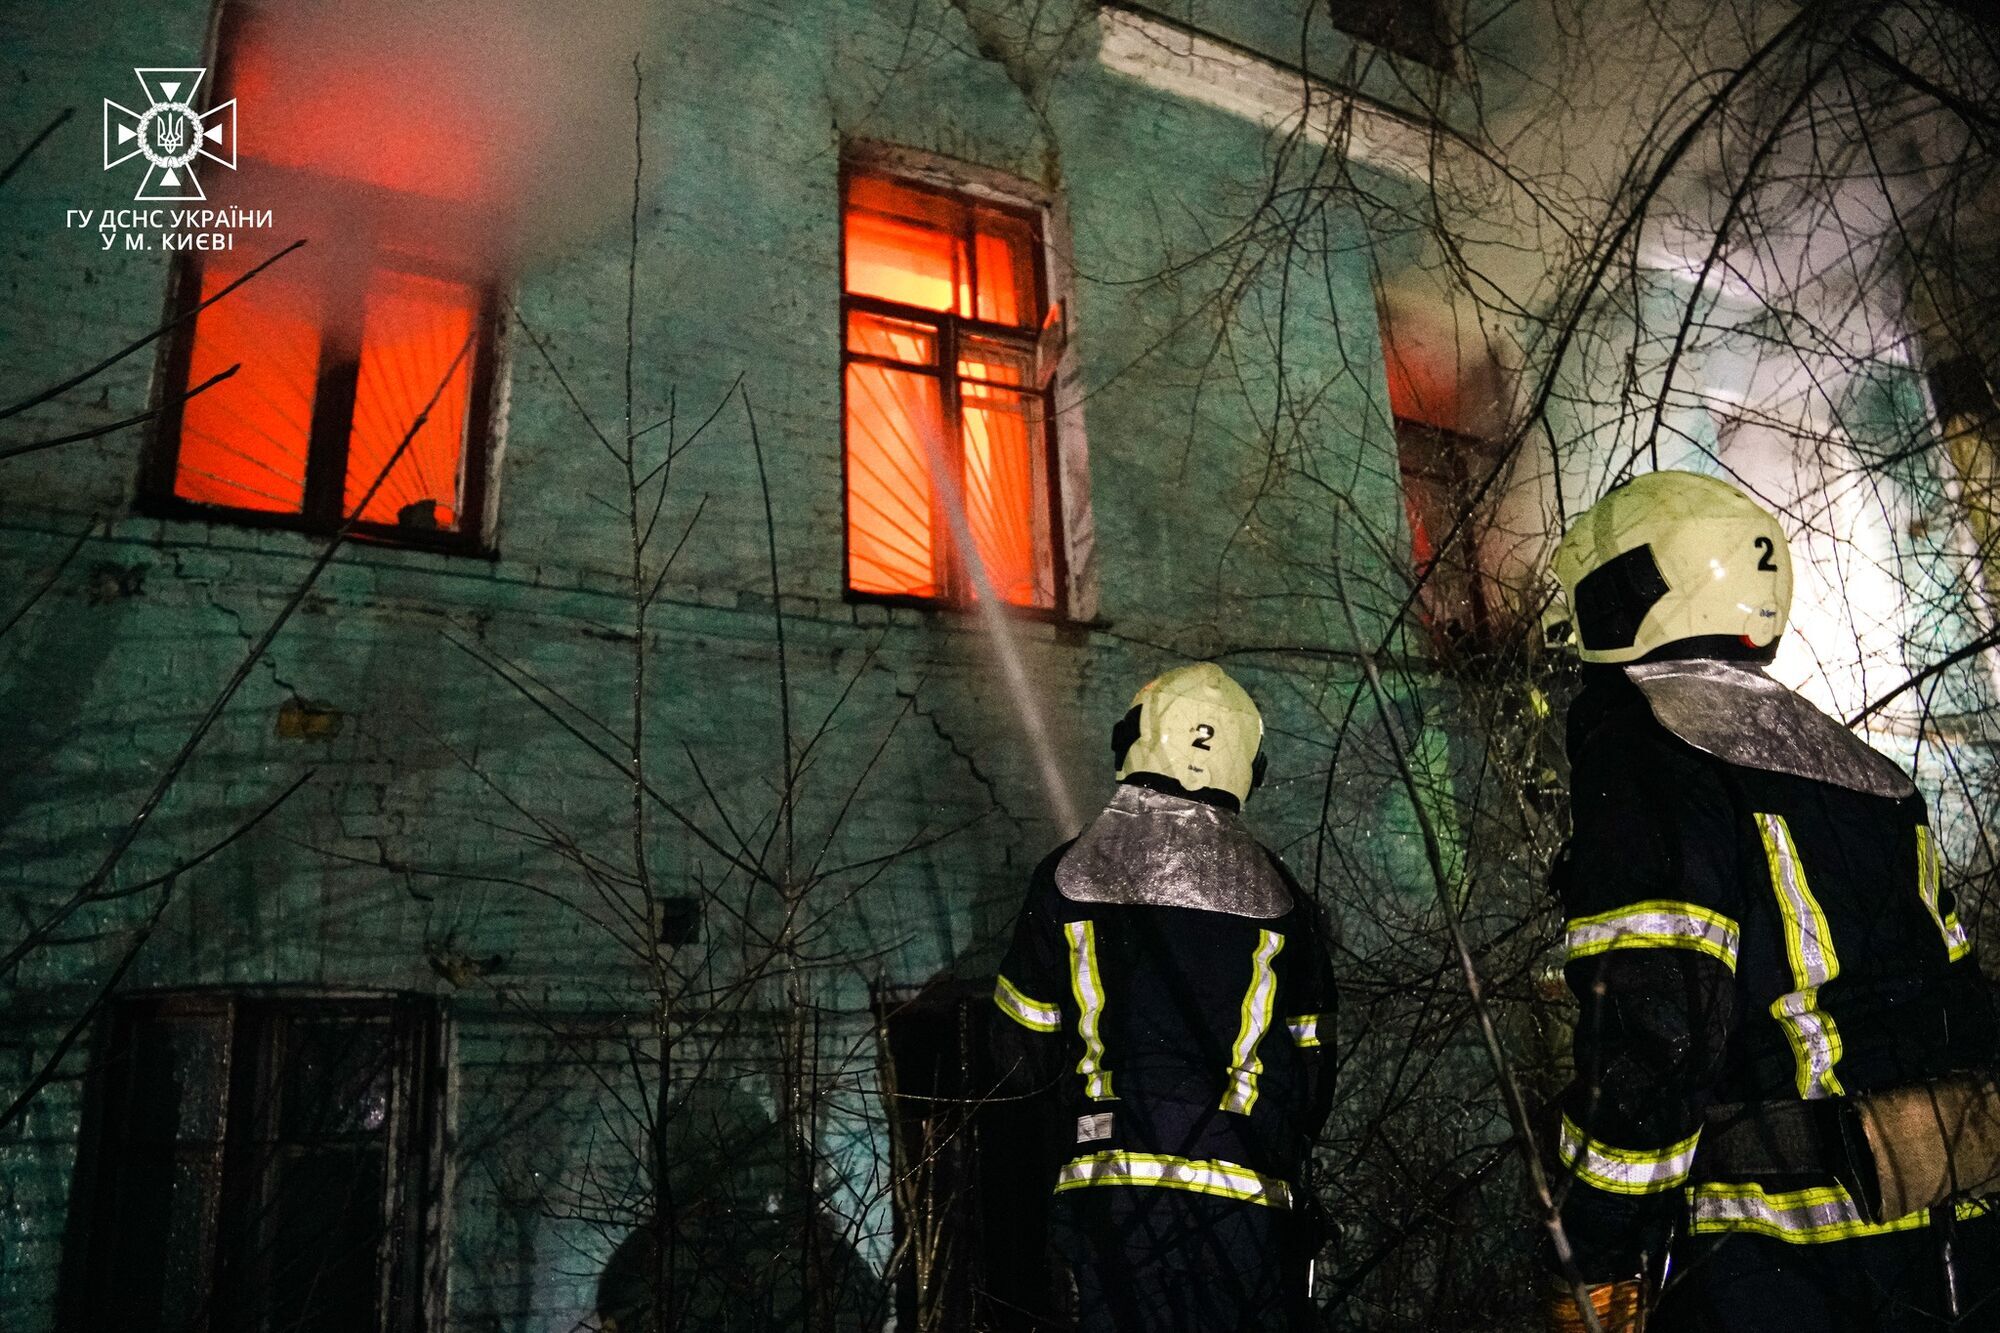 В Киеве обнаружили тело мужчины во время тушения пожара в отселенном доме. Фото и видео